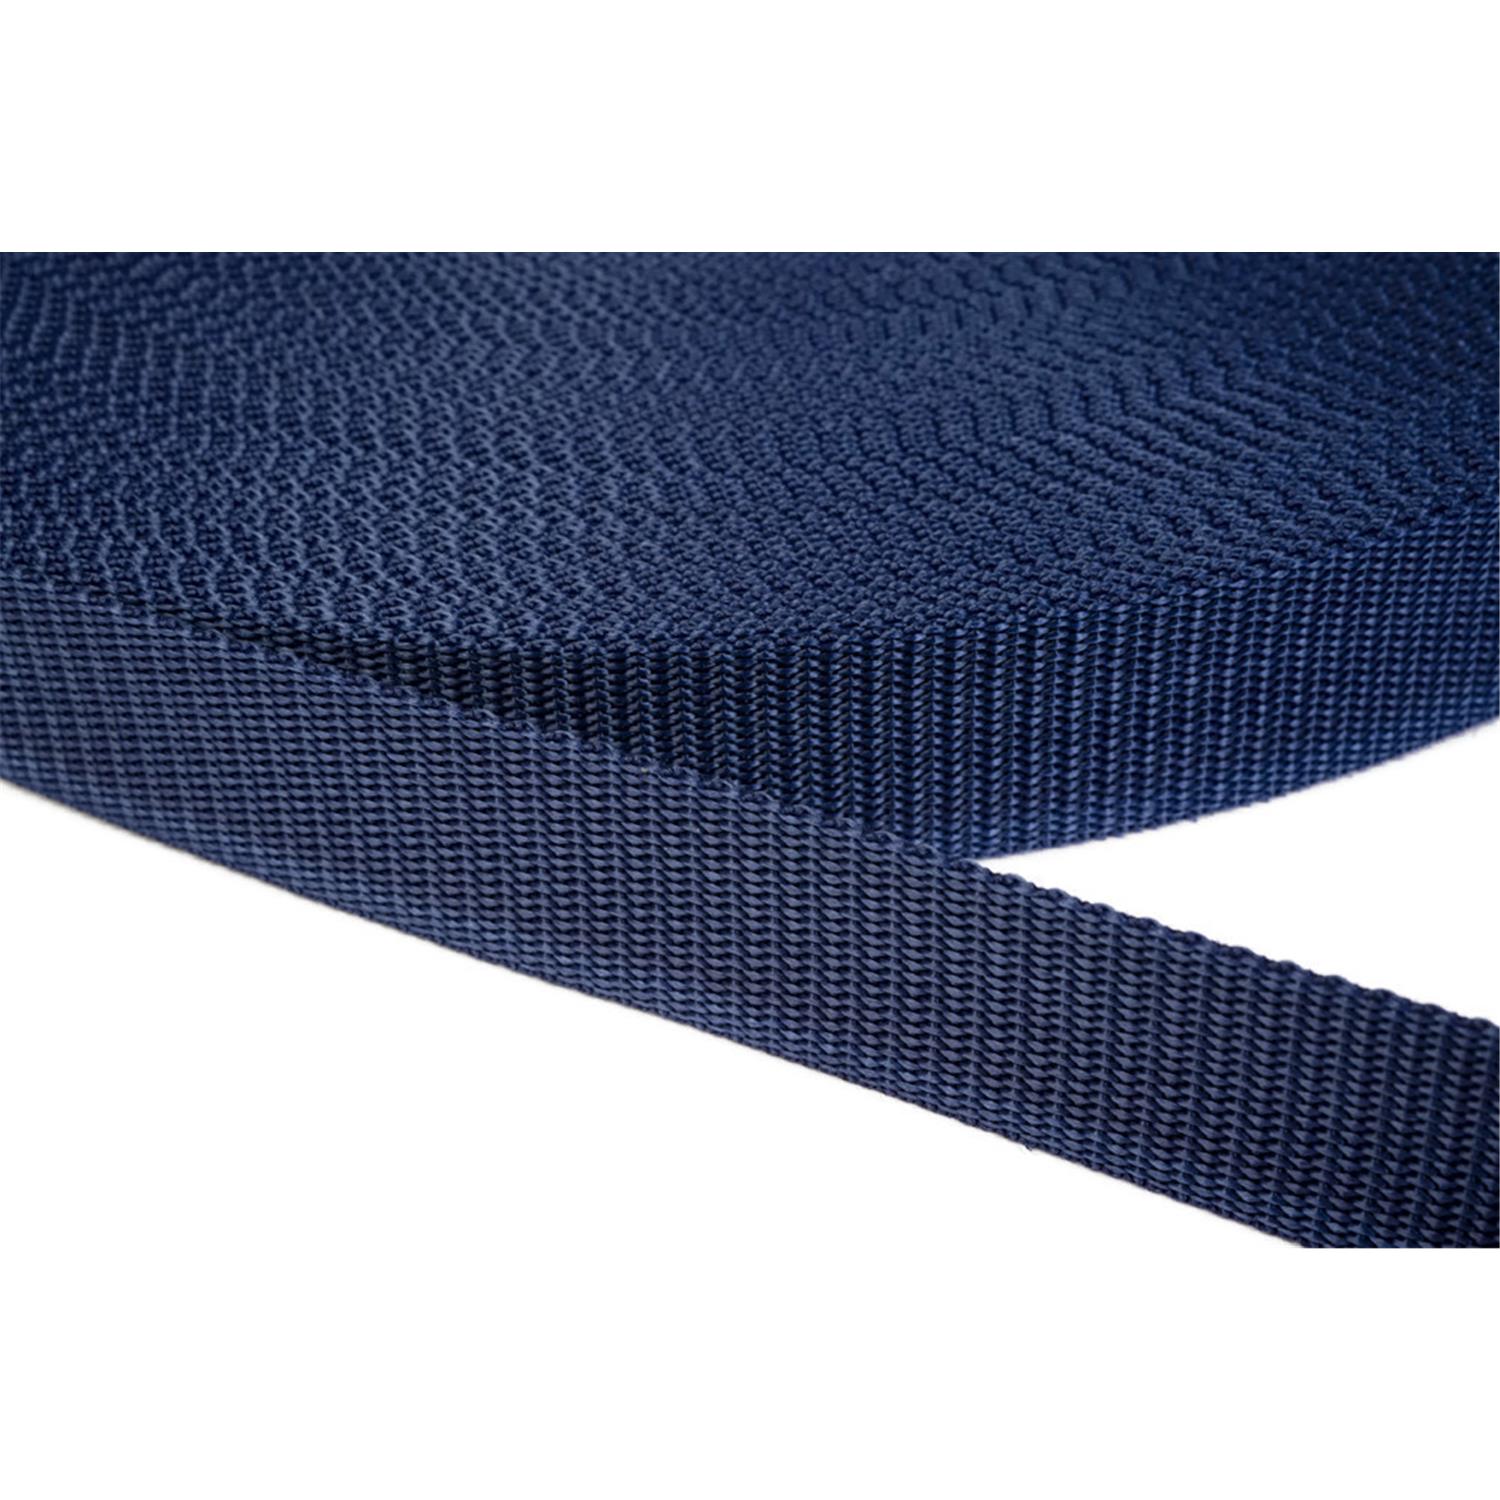 Gurtband 20mm breit aus Polypropylen in 41 Farben 27 - dunkelblau 12 Meter